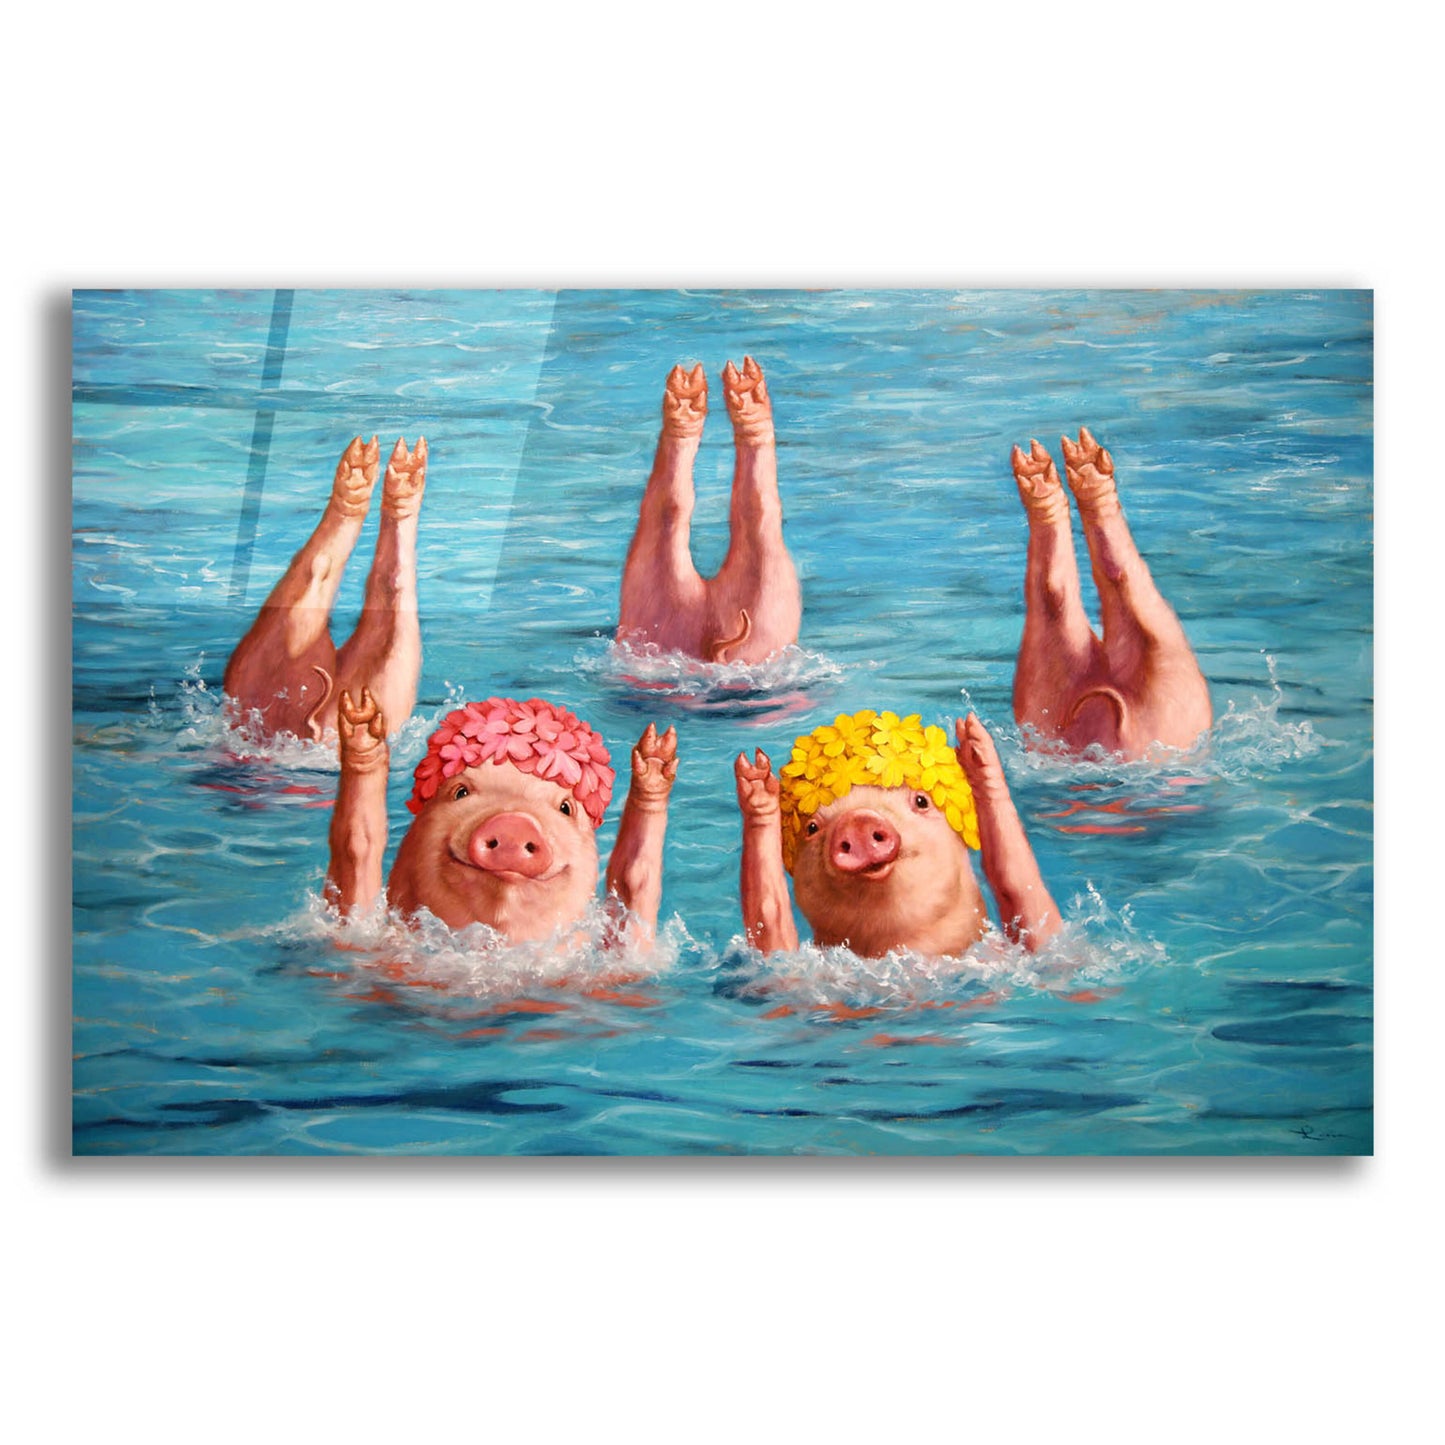 Epic Art 'Water Ballet' by Lucia Heffernan,16x12